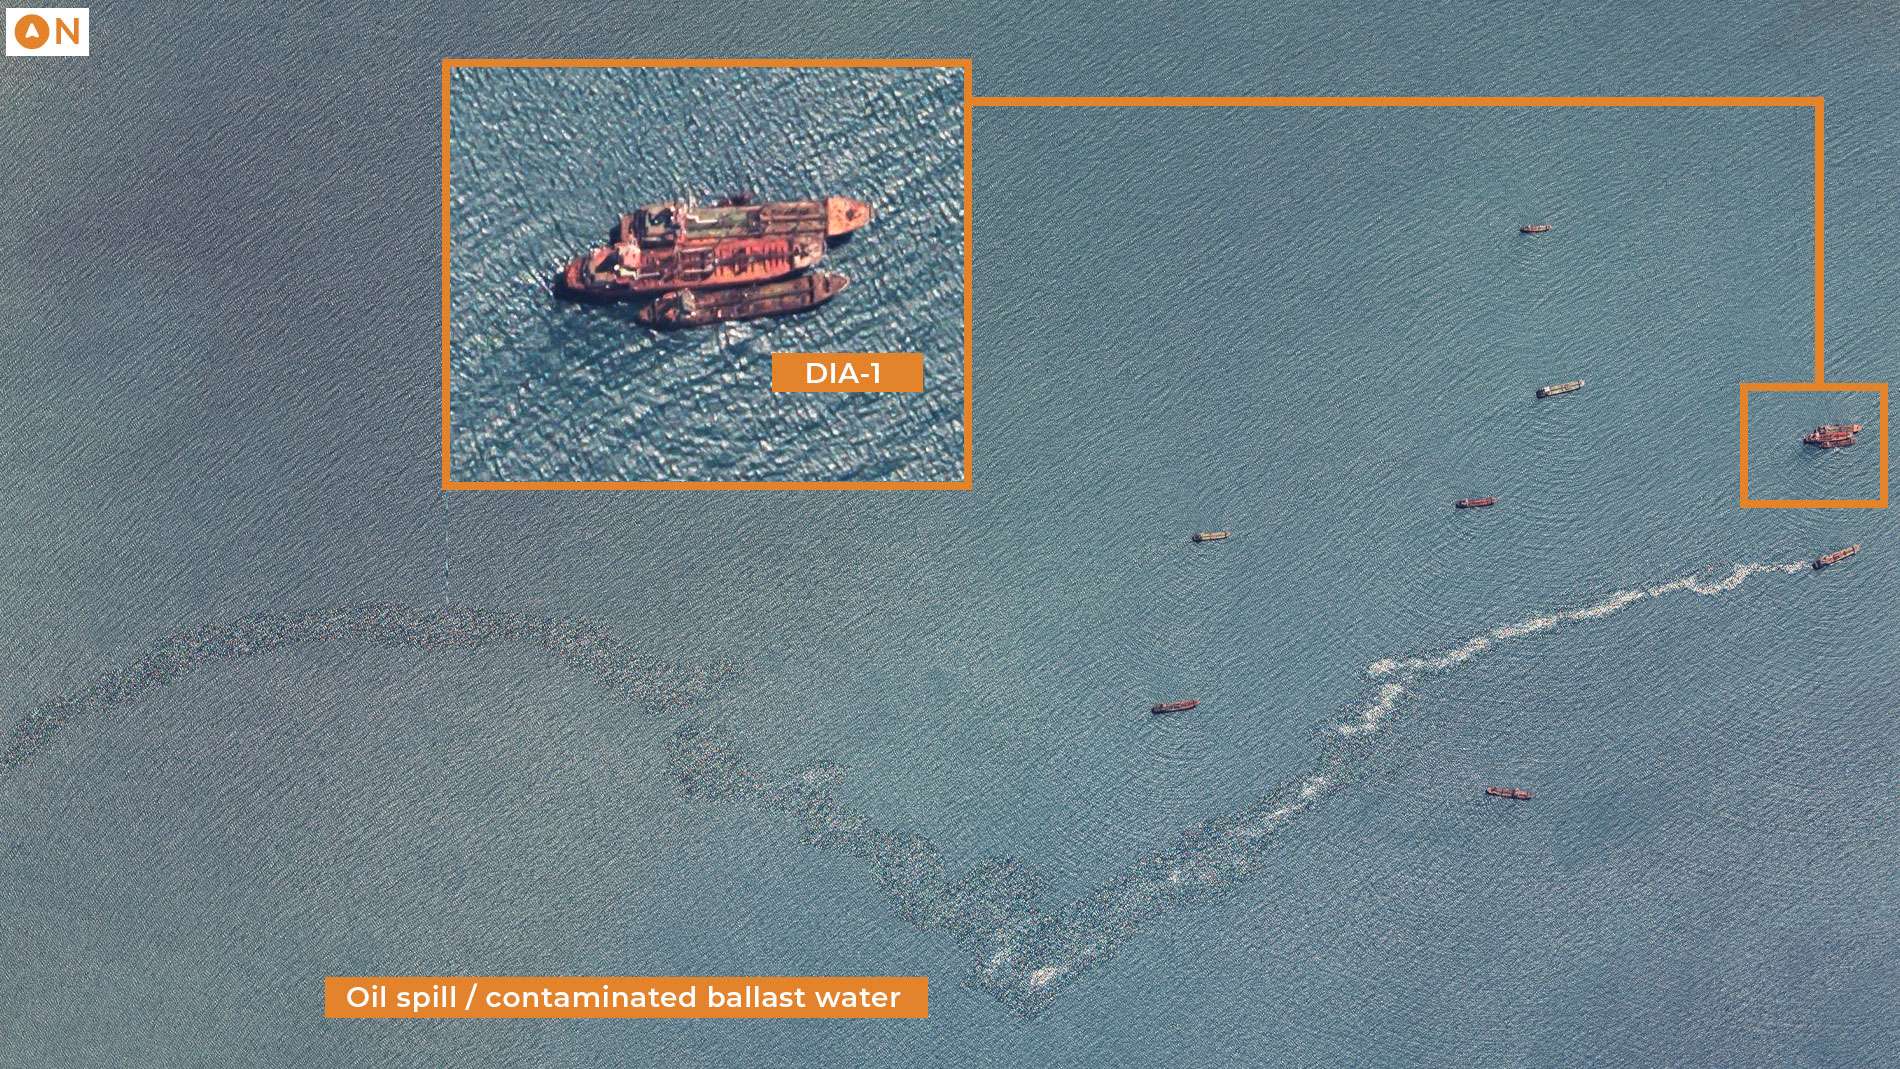 منظمة دولية تطلق تحذير حول ناقلات نفطية مهجورة تهدد ميناء عدن 